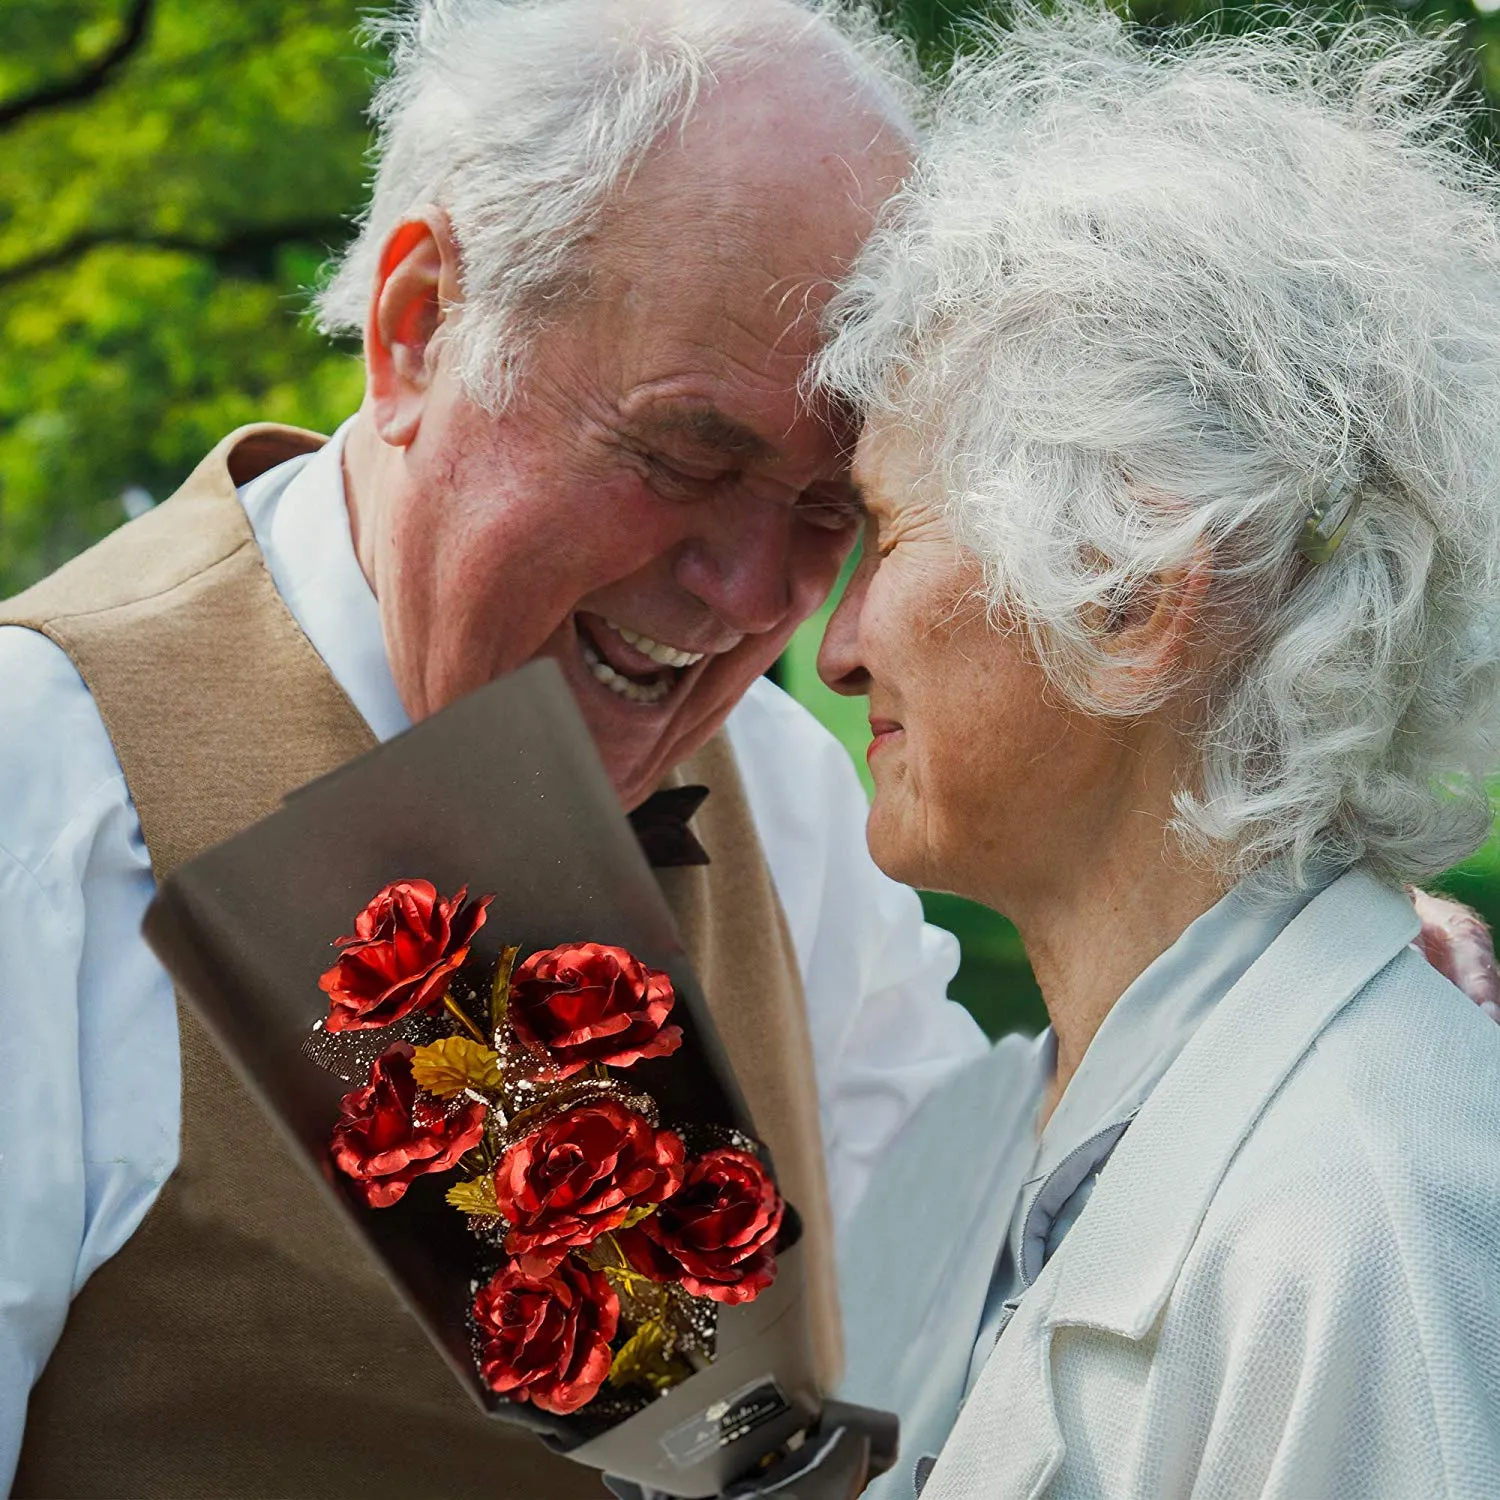 24k Or Roses Bouquet Plaqué Or Rose Forever Cadeaux pour Son Anniversaire De La Saint Valentin Mariage Fête Des Mères Anniversaire Gift298V